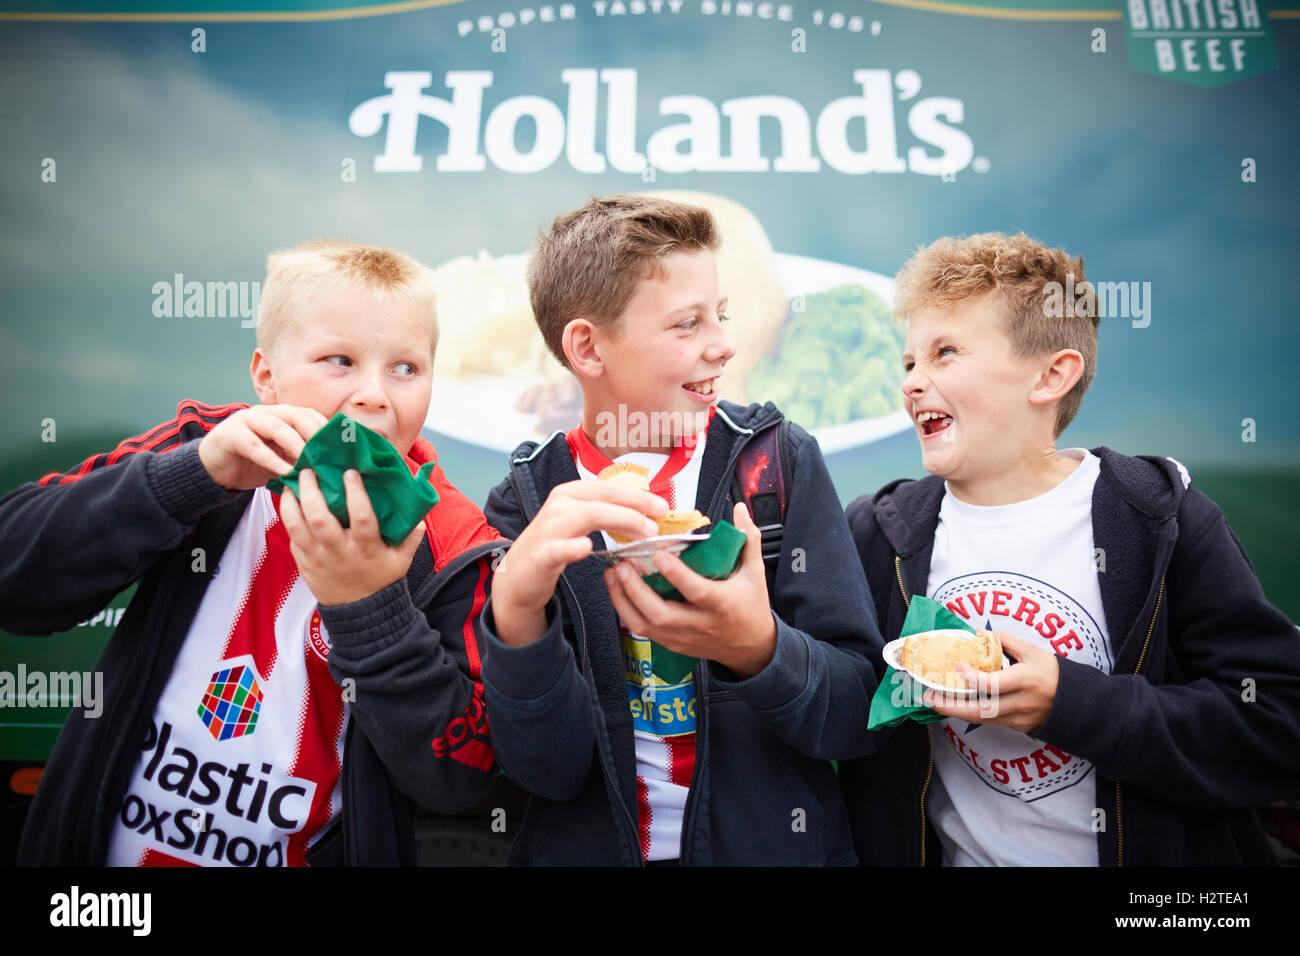 Les fans de football, manger des tartes Hollands Accrington Stanley FC fans jeu de correspondance et de manger les tartes heureux rire les jeunes enfants enfants youngst Banque D'Images